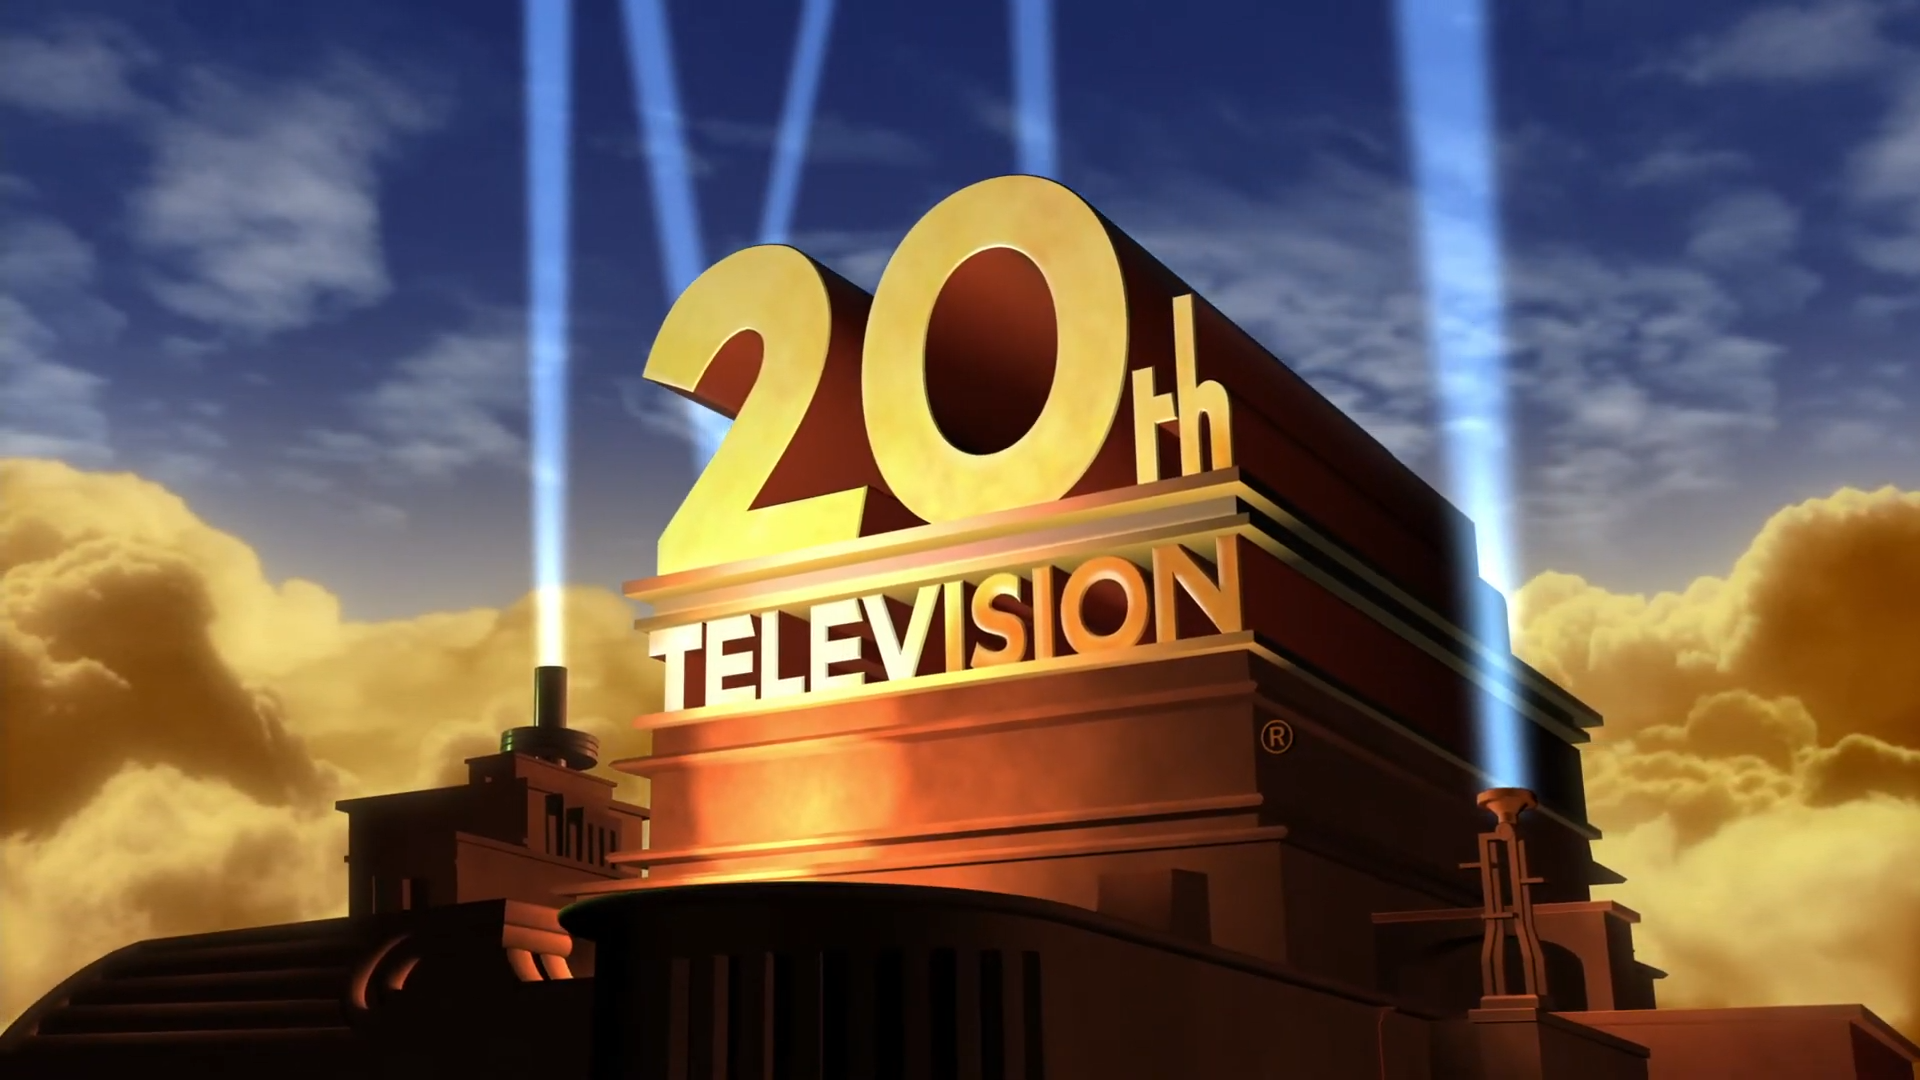 20th Television (20th Television): 20th Television là một hãng phim nổi tiếng với các bộ phim ăn khách trên toàn thế giới. Hãy cùng đón xem các hình ảnh liên quan đến 20th Television và khám phá những tác phẩm điện ảnh đầy thú vị do họ sản xuất.